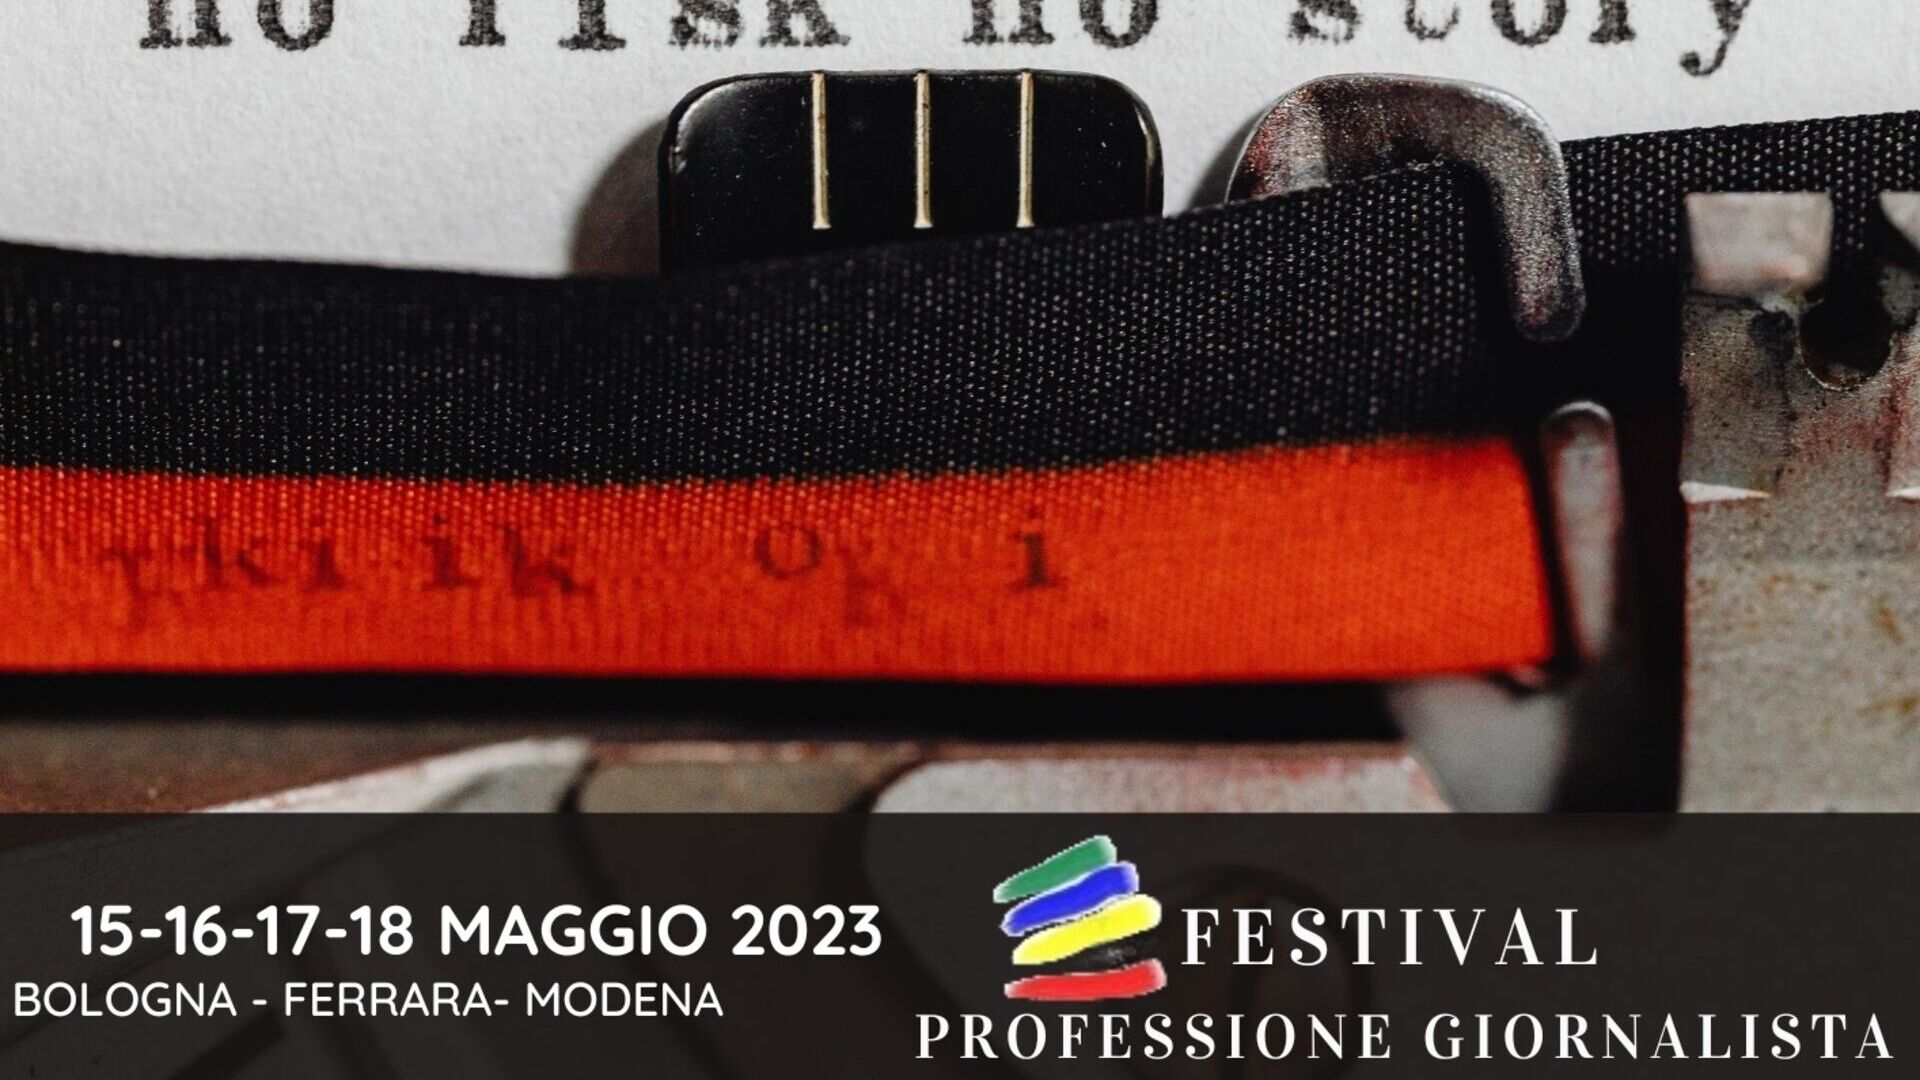 Zawód dziennikarza: key visual edycji 2023 festiwalu „Professione Giornalista” (Bolonia, Ferrara, Modena, 15-16-17-18 maja)